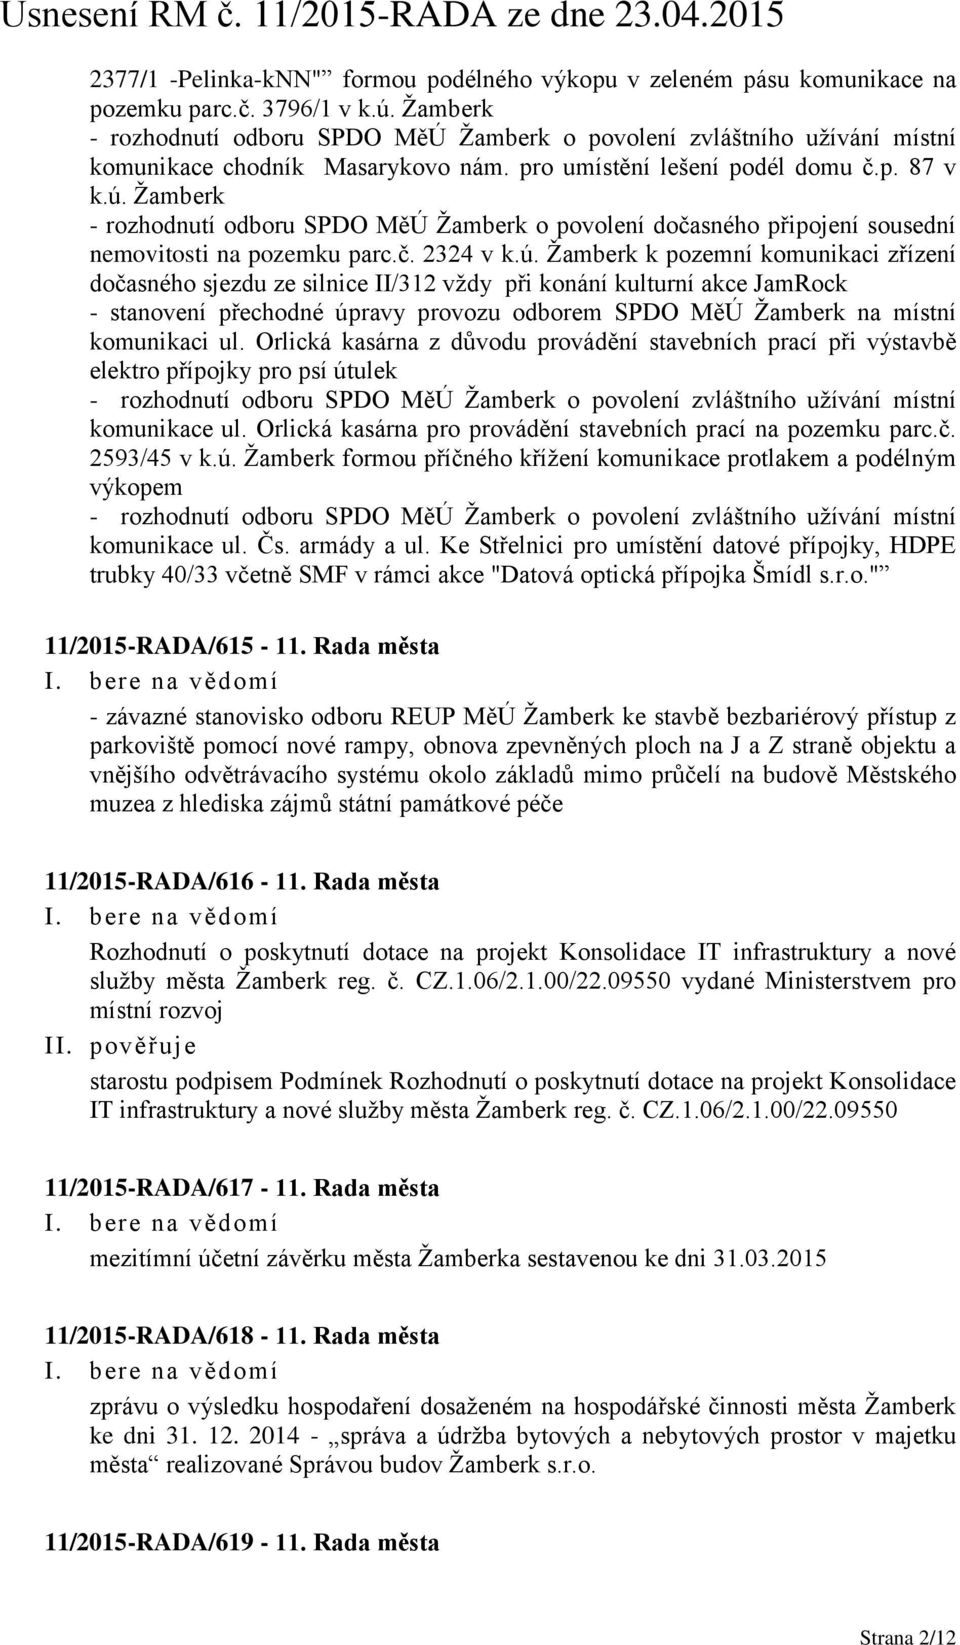 Žamberk - rozhodnutí odboru SPDO MěÚ Žamberk o povolení dočasného připojení sousední nemovitosti na pozemku parc.č. 2324 v k.ú.